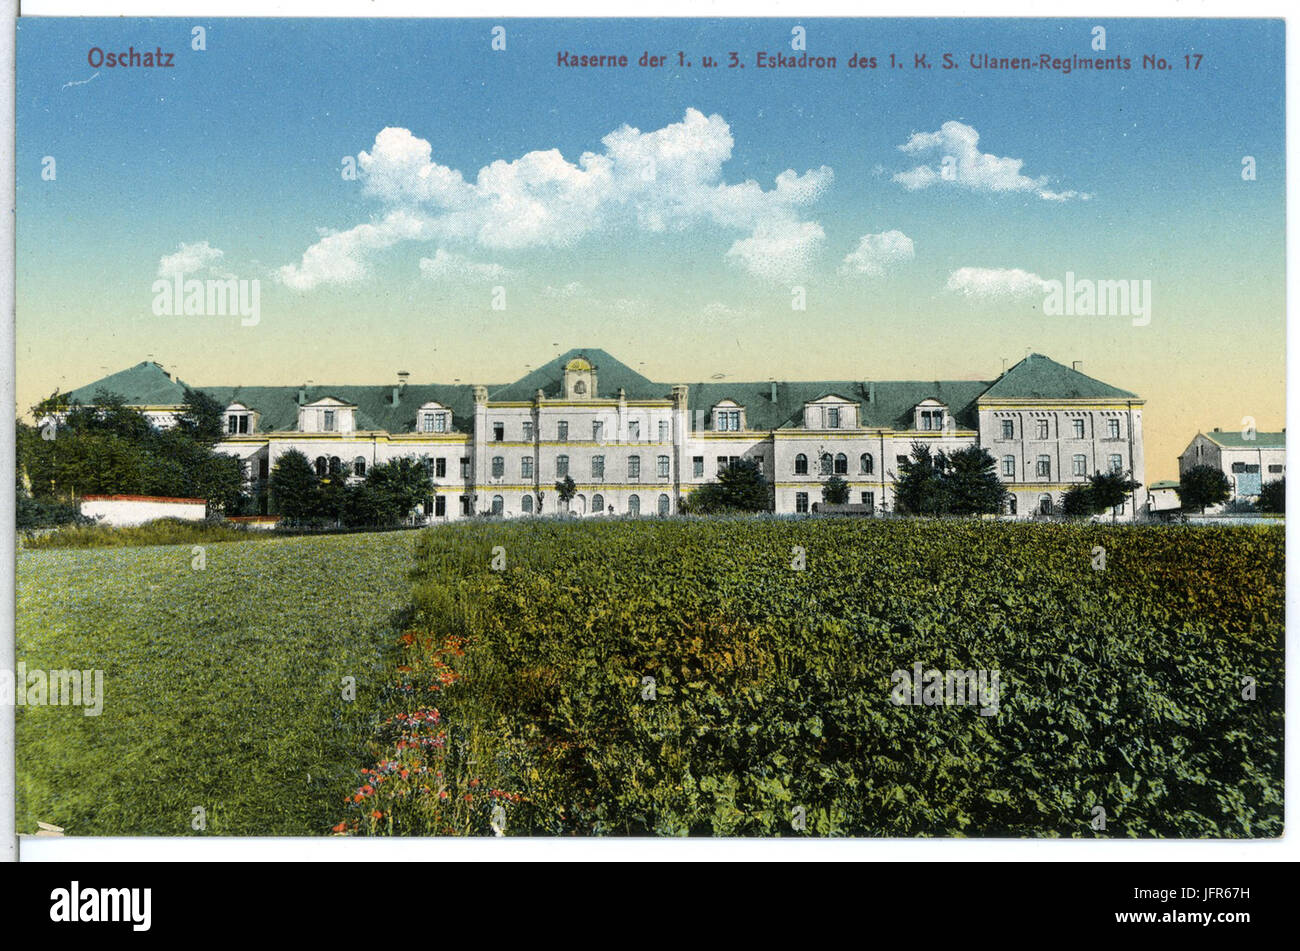 15 4-Oschatz-1912-Kaserne des 1. und 3. Eskadron des 1. Königlich Sächsischen Ulanen-Regiment Nr. 17-Brück & Sohn Kunstverlag Stock Photo